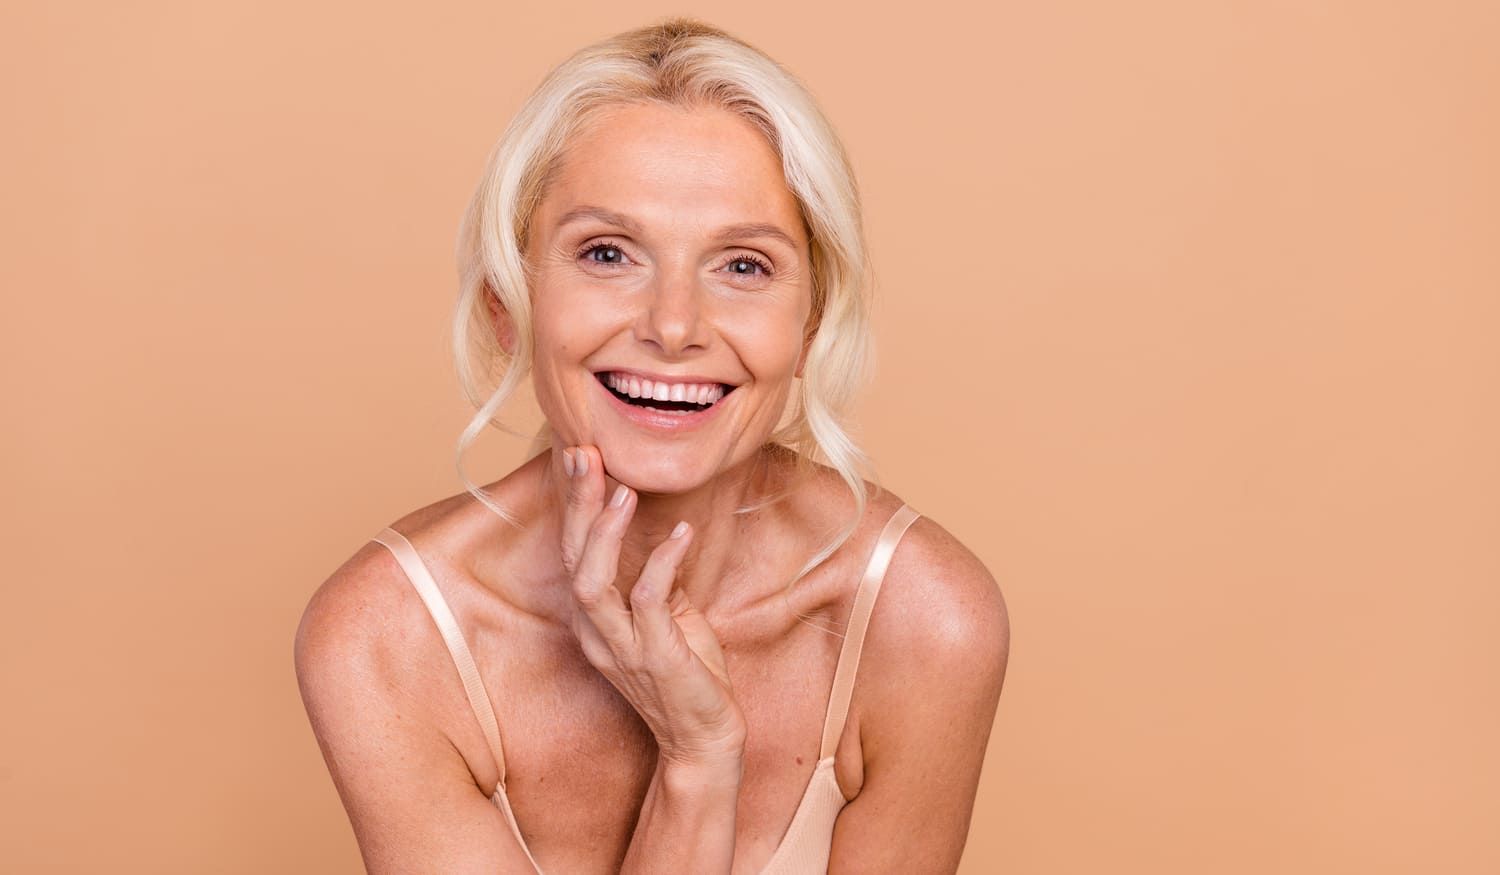 Hautprobleme in den Wechseljahren? Mit diesen Tipps holst du dir dein Strahlen zurück!